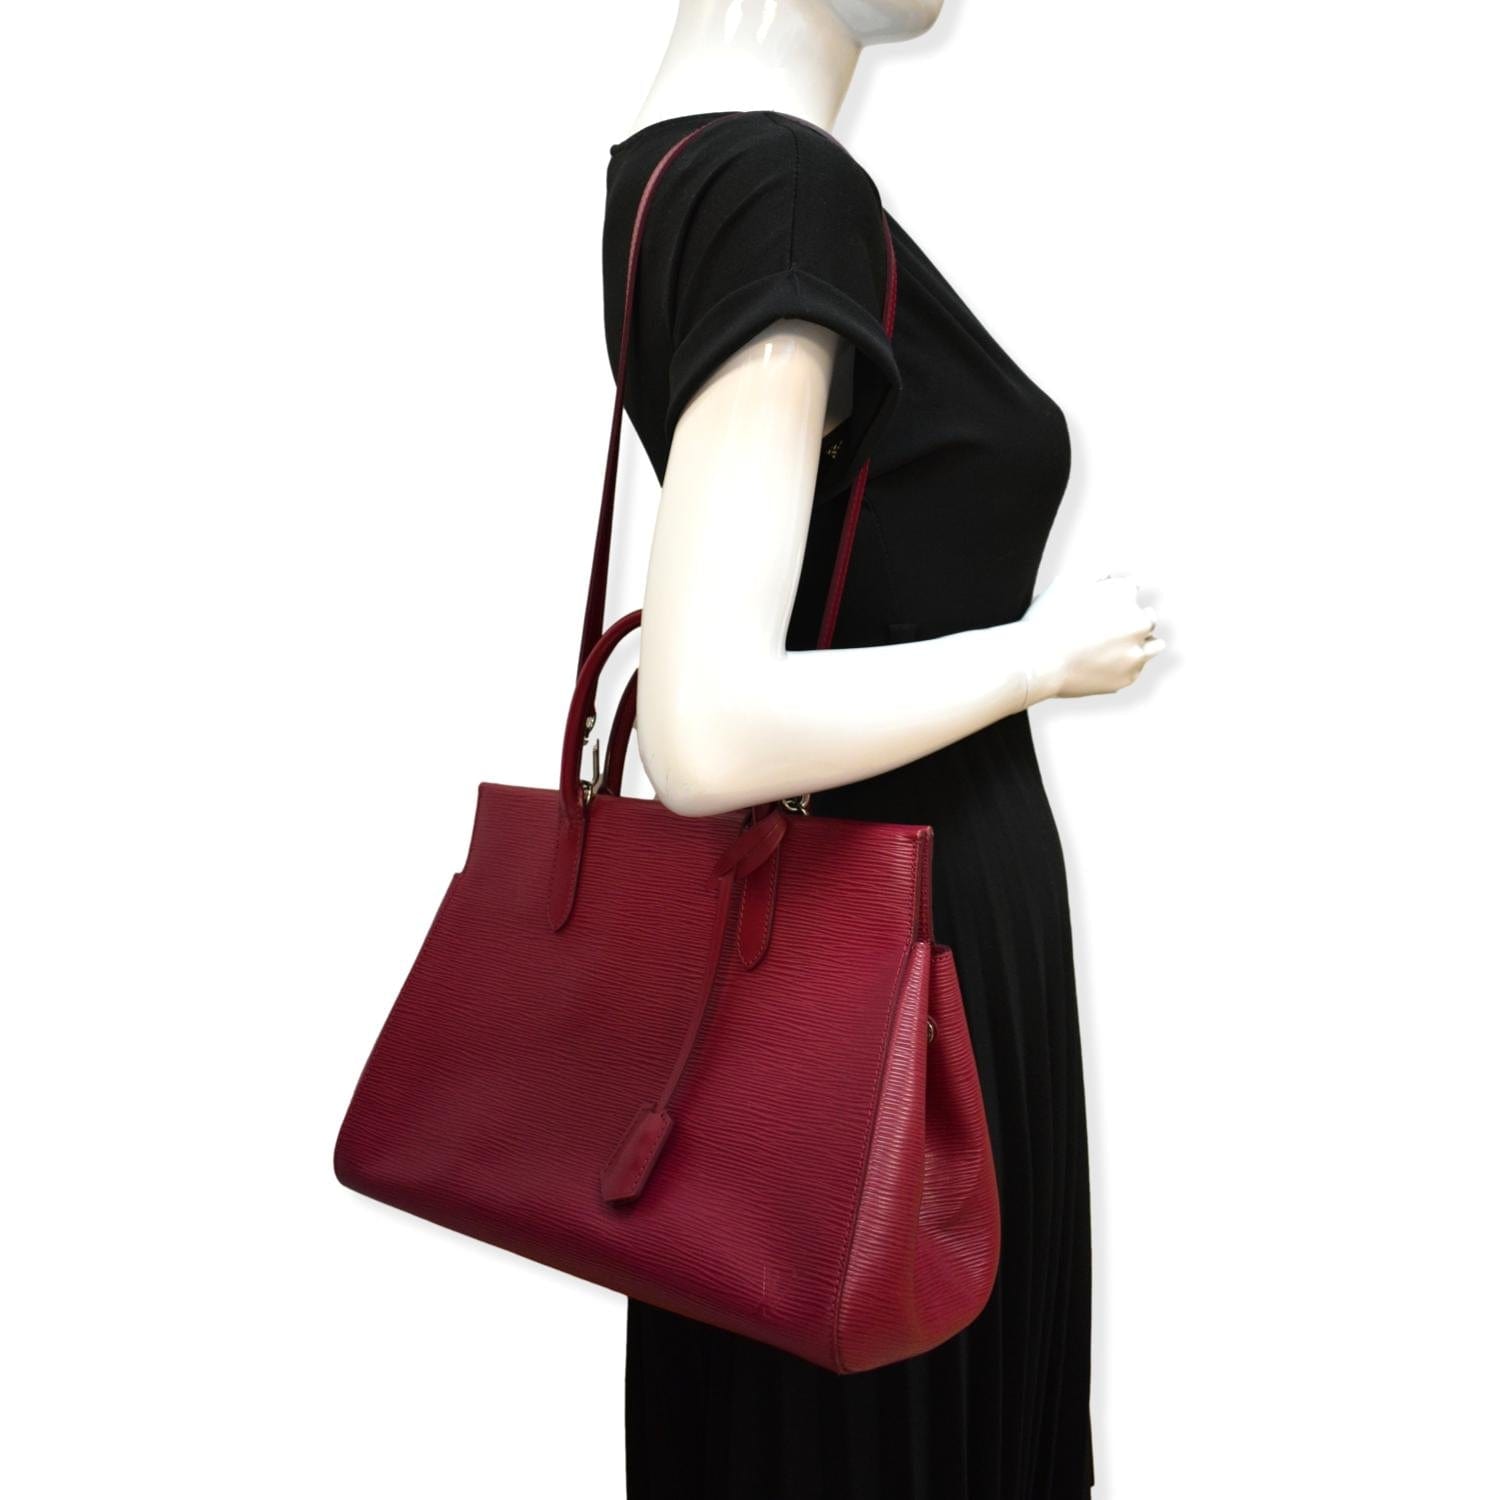 Marly vintage cloth handbag Louis Vuitton Brown in Cloth - 35844815